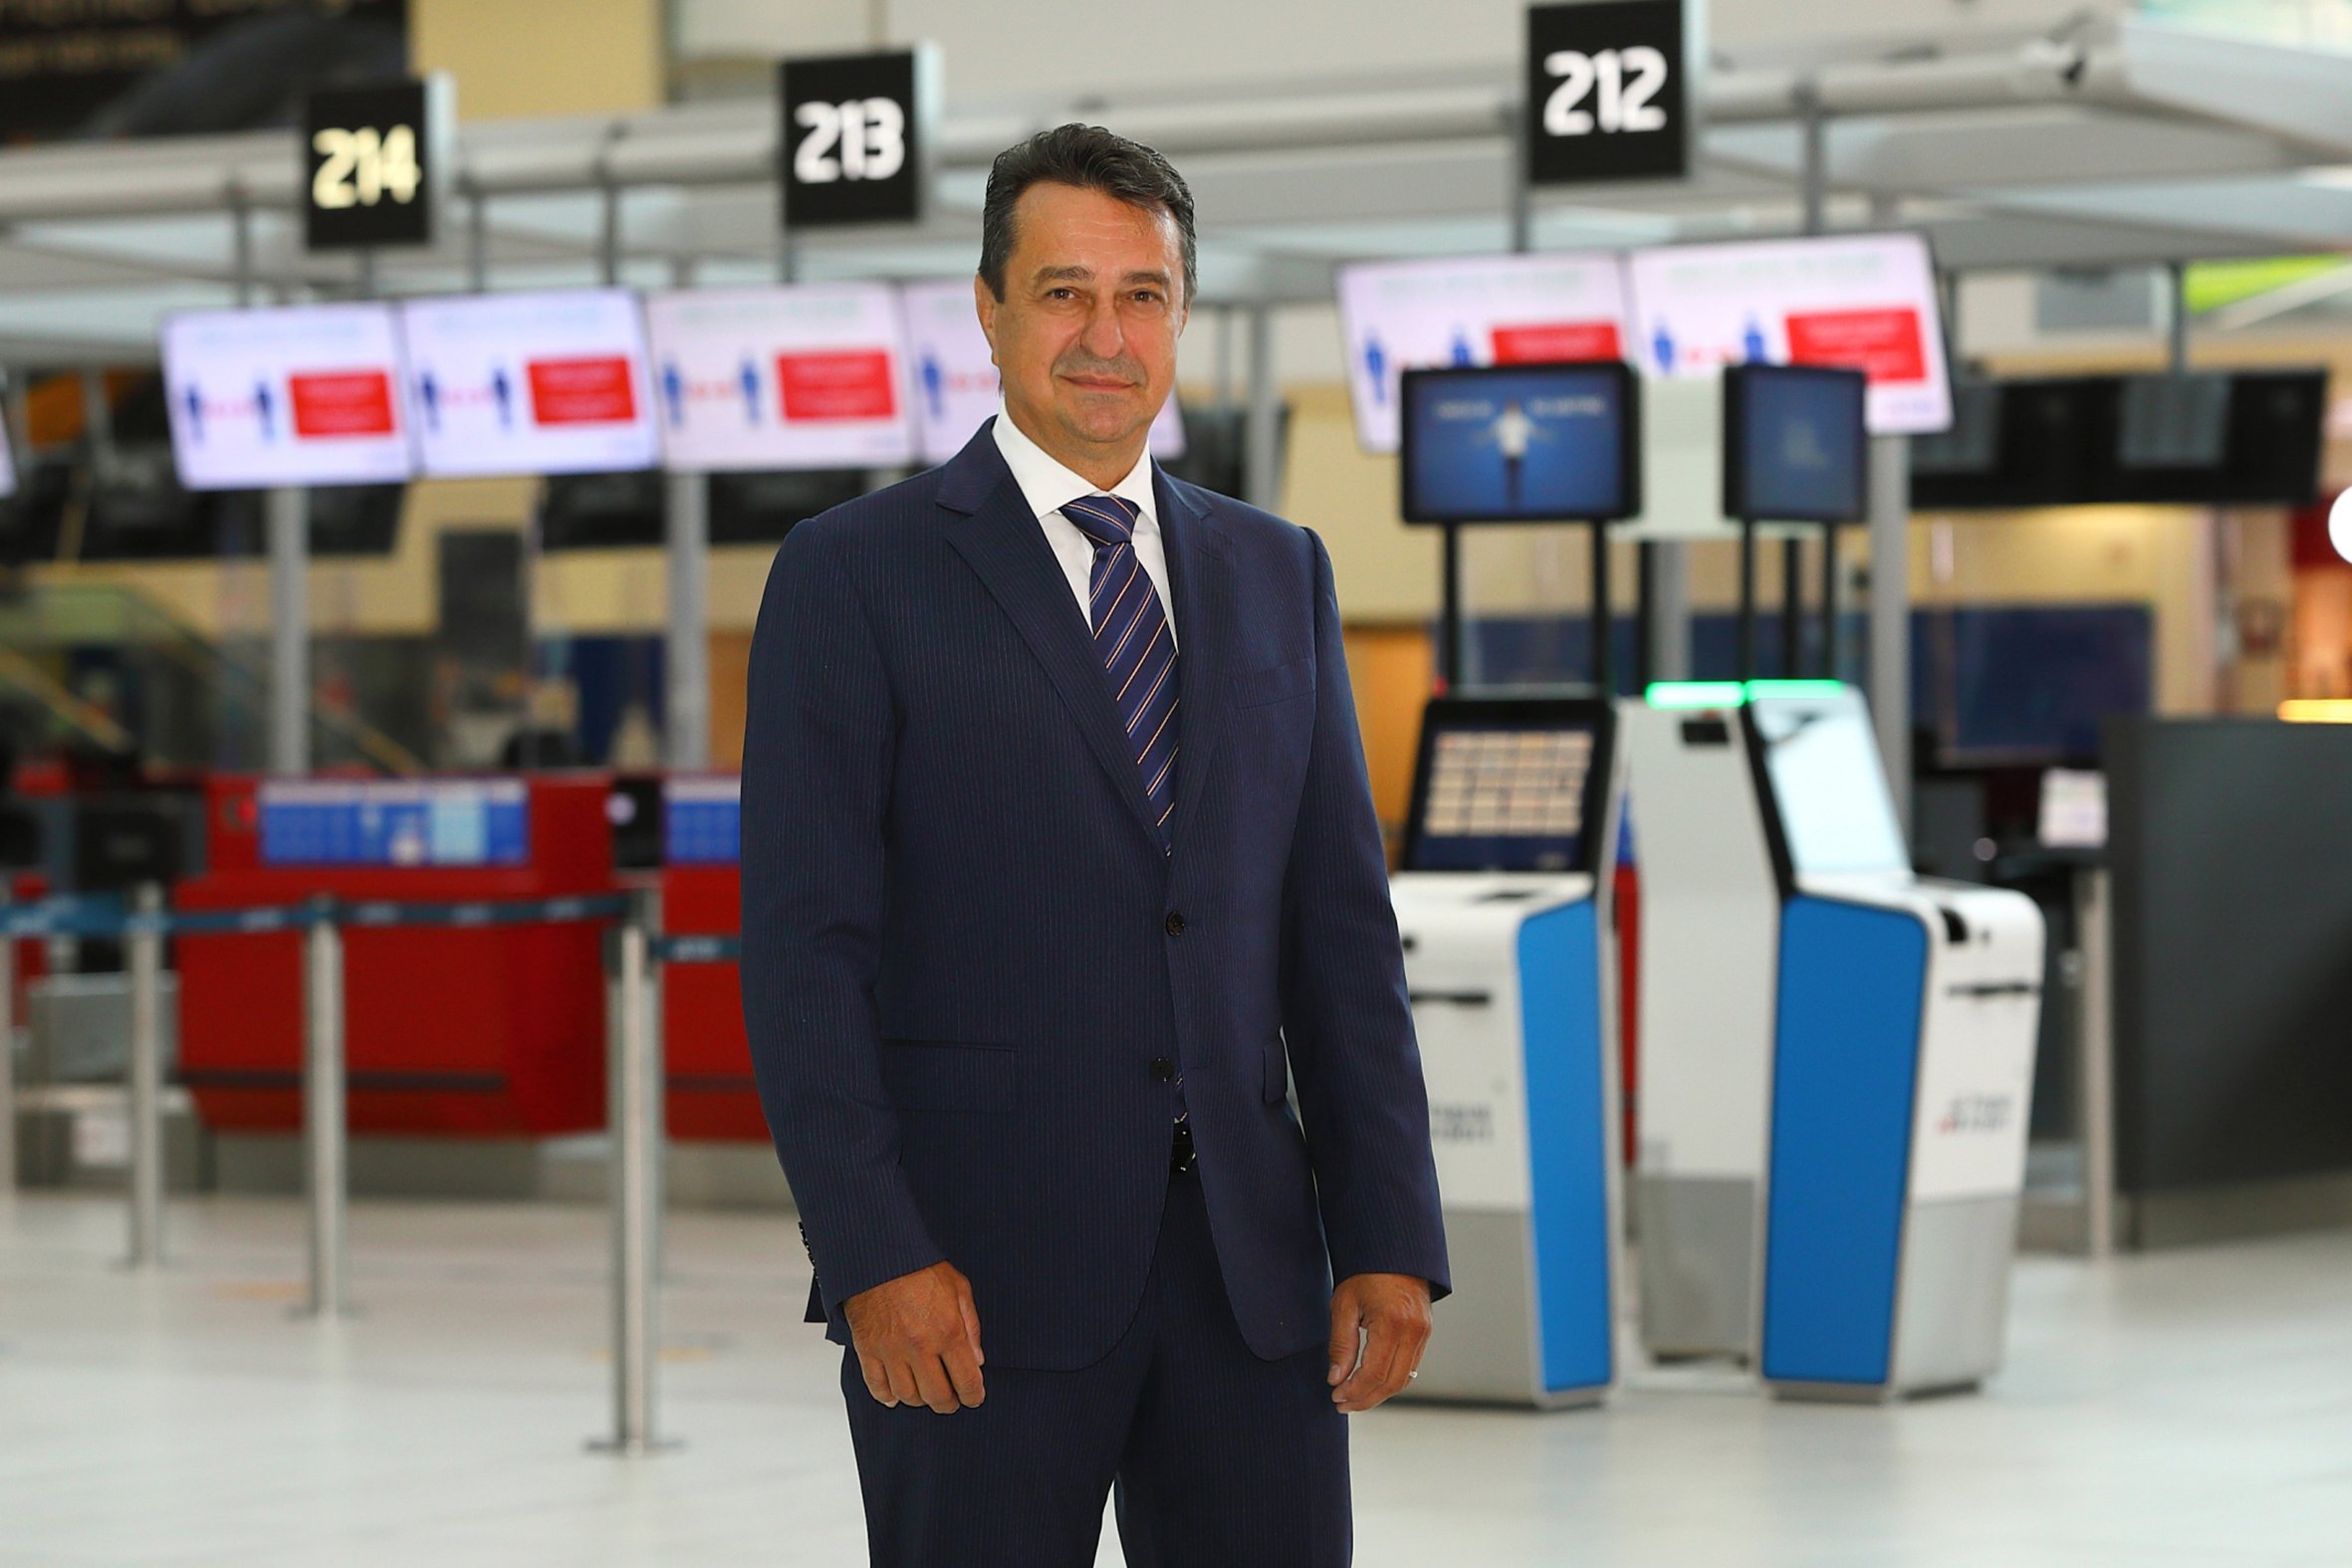 O Conselho de Administração do Aeroporto de Praga elege o novo Presidente